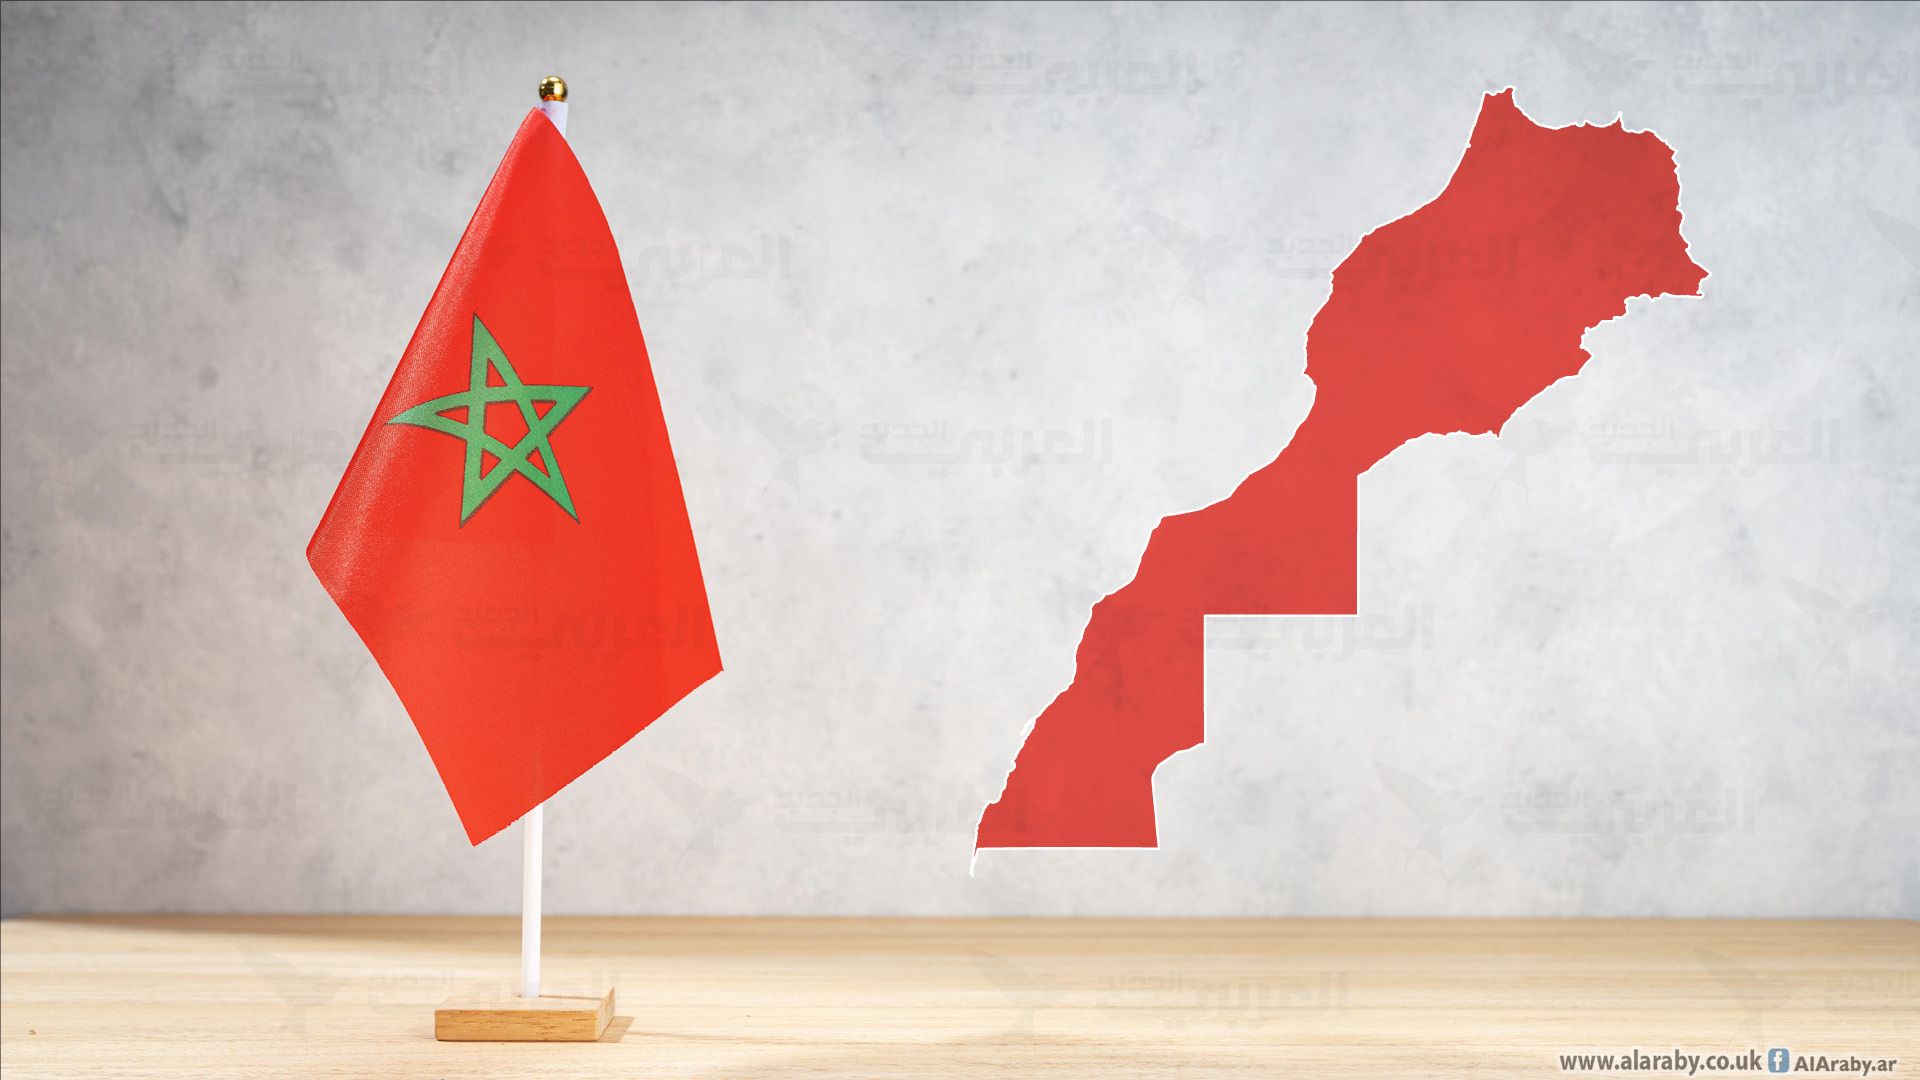 بيان للأمانة العامة للمنظمة المغربية لحقوق الانسان حول مقابلة نهضة بركان واتحاد العاصمة الجزائري